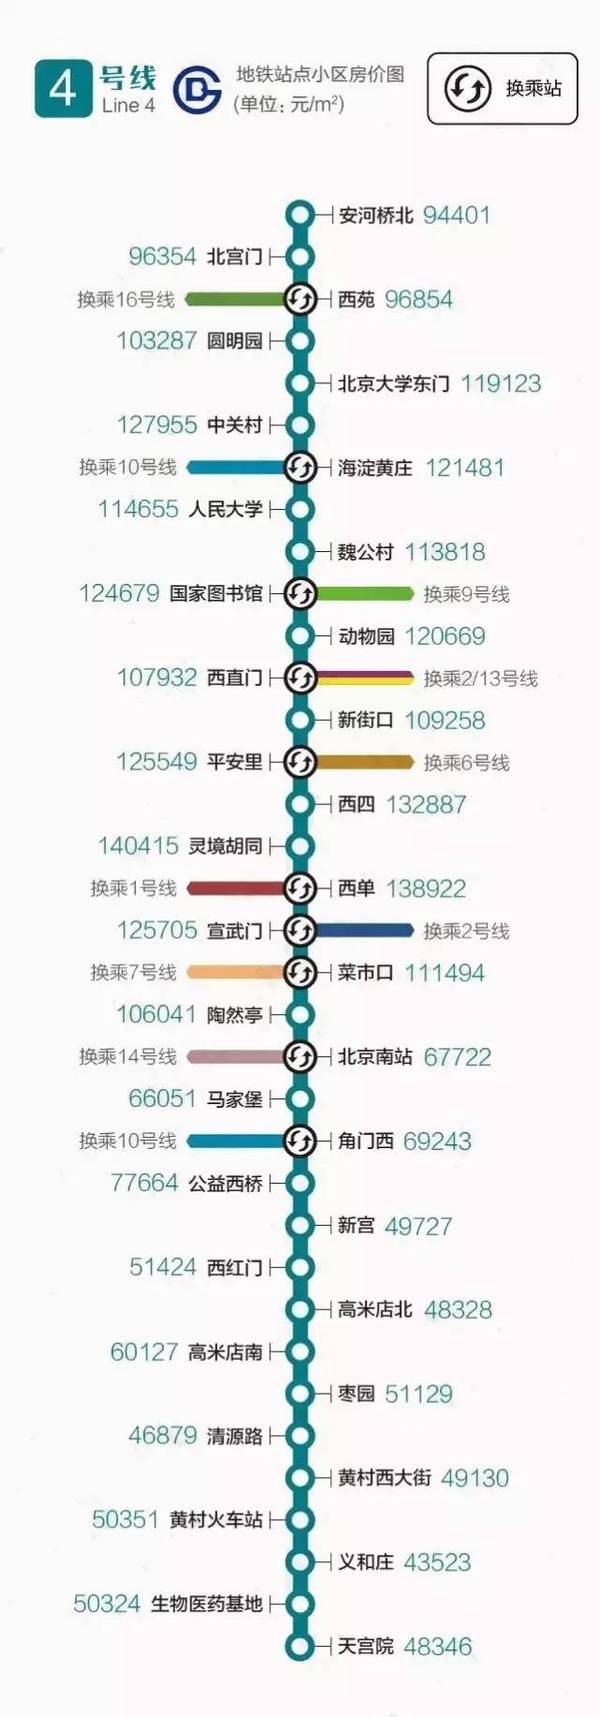 均价最低地铁站:八里桥站(47744元/㎡) 均价最高地铁站:和平门站